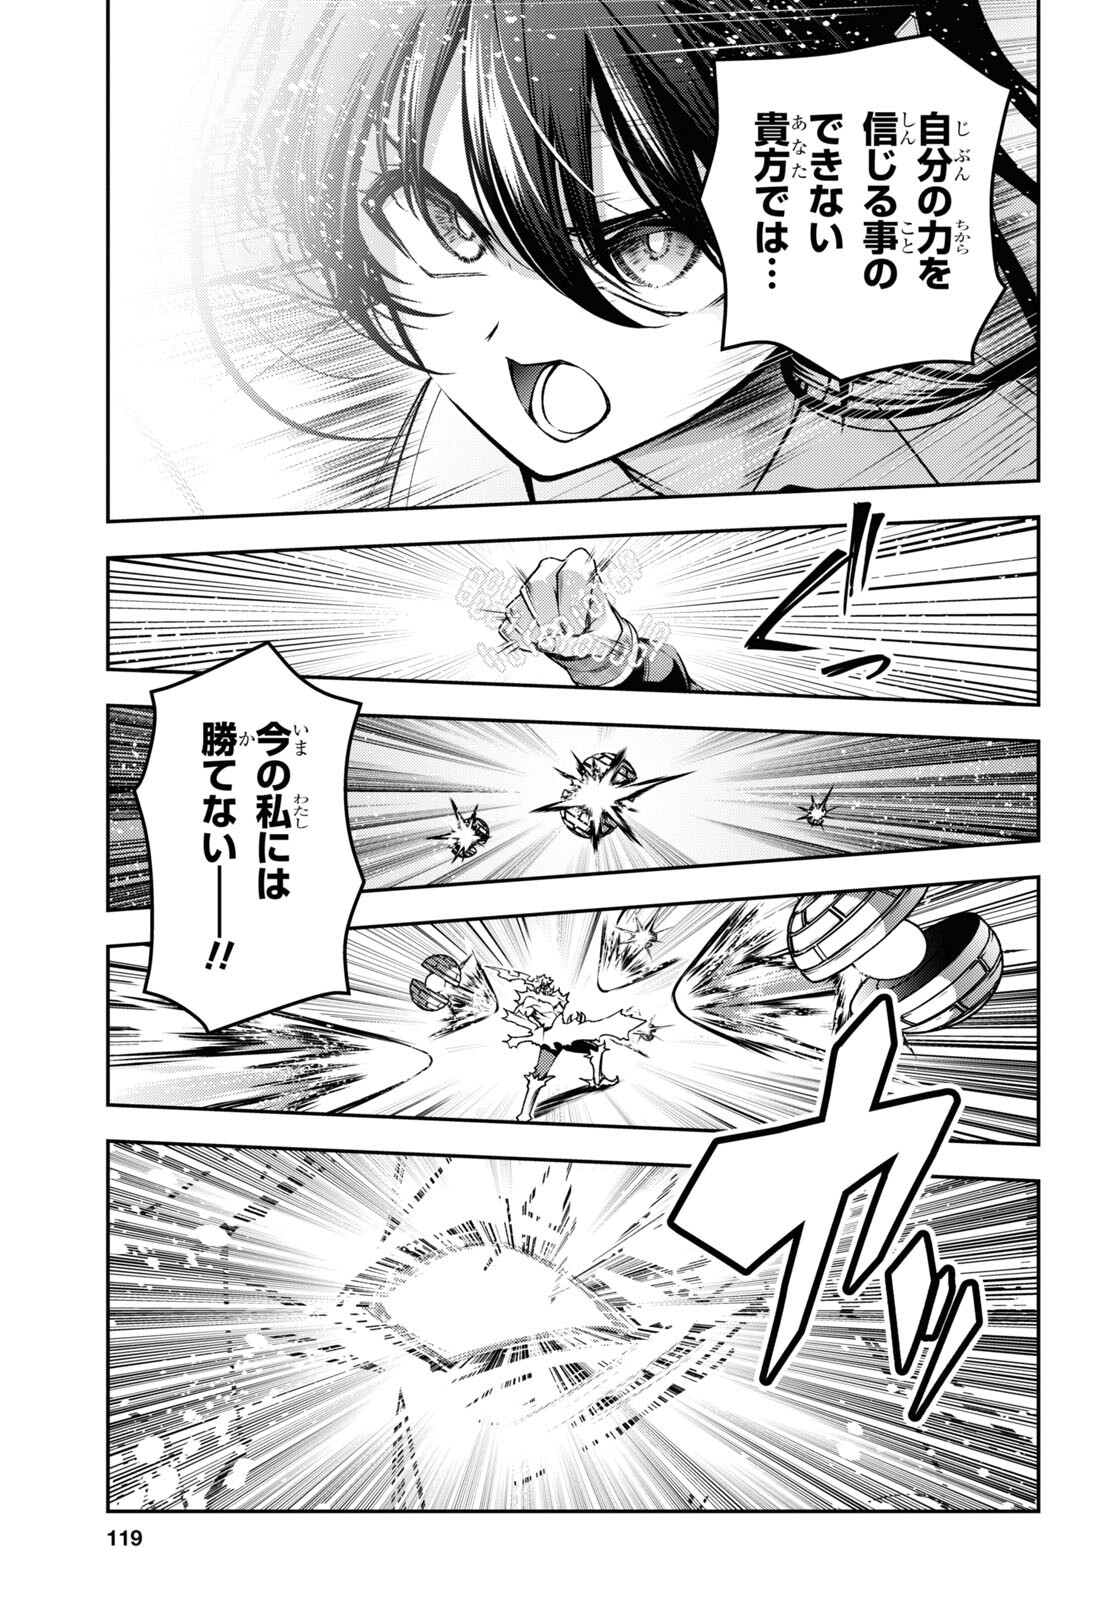 Seiken Gakuin no Maken Tsukai - Chapter 47 - Page 3